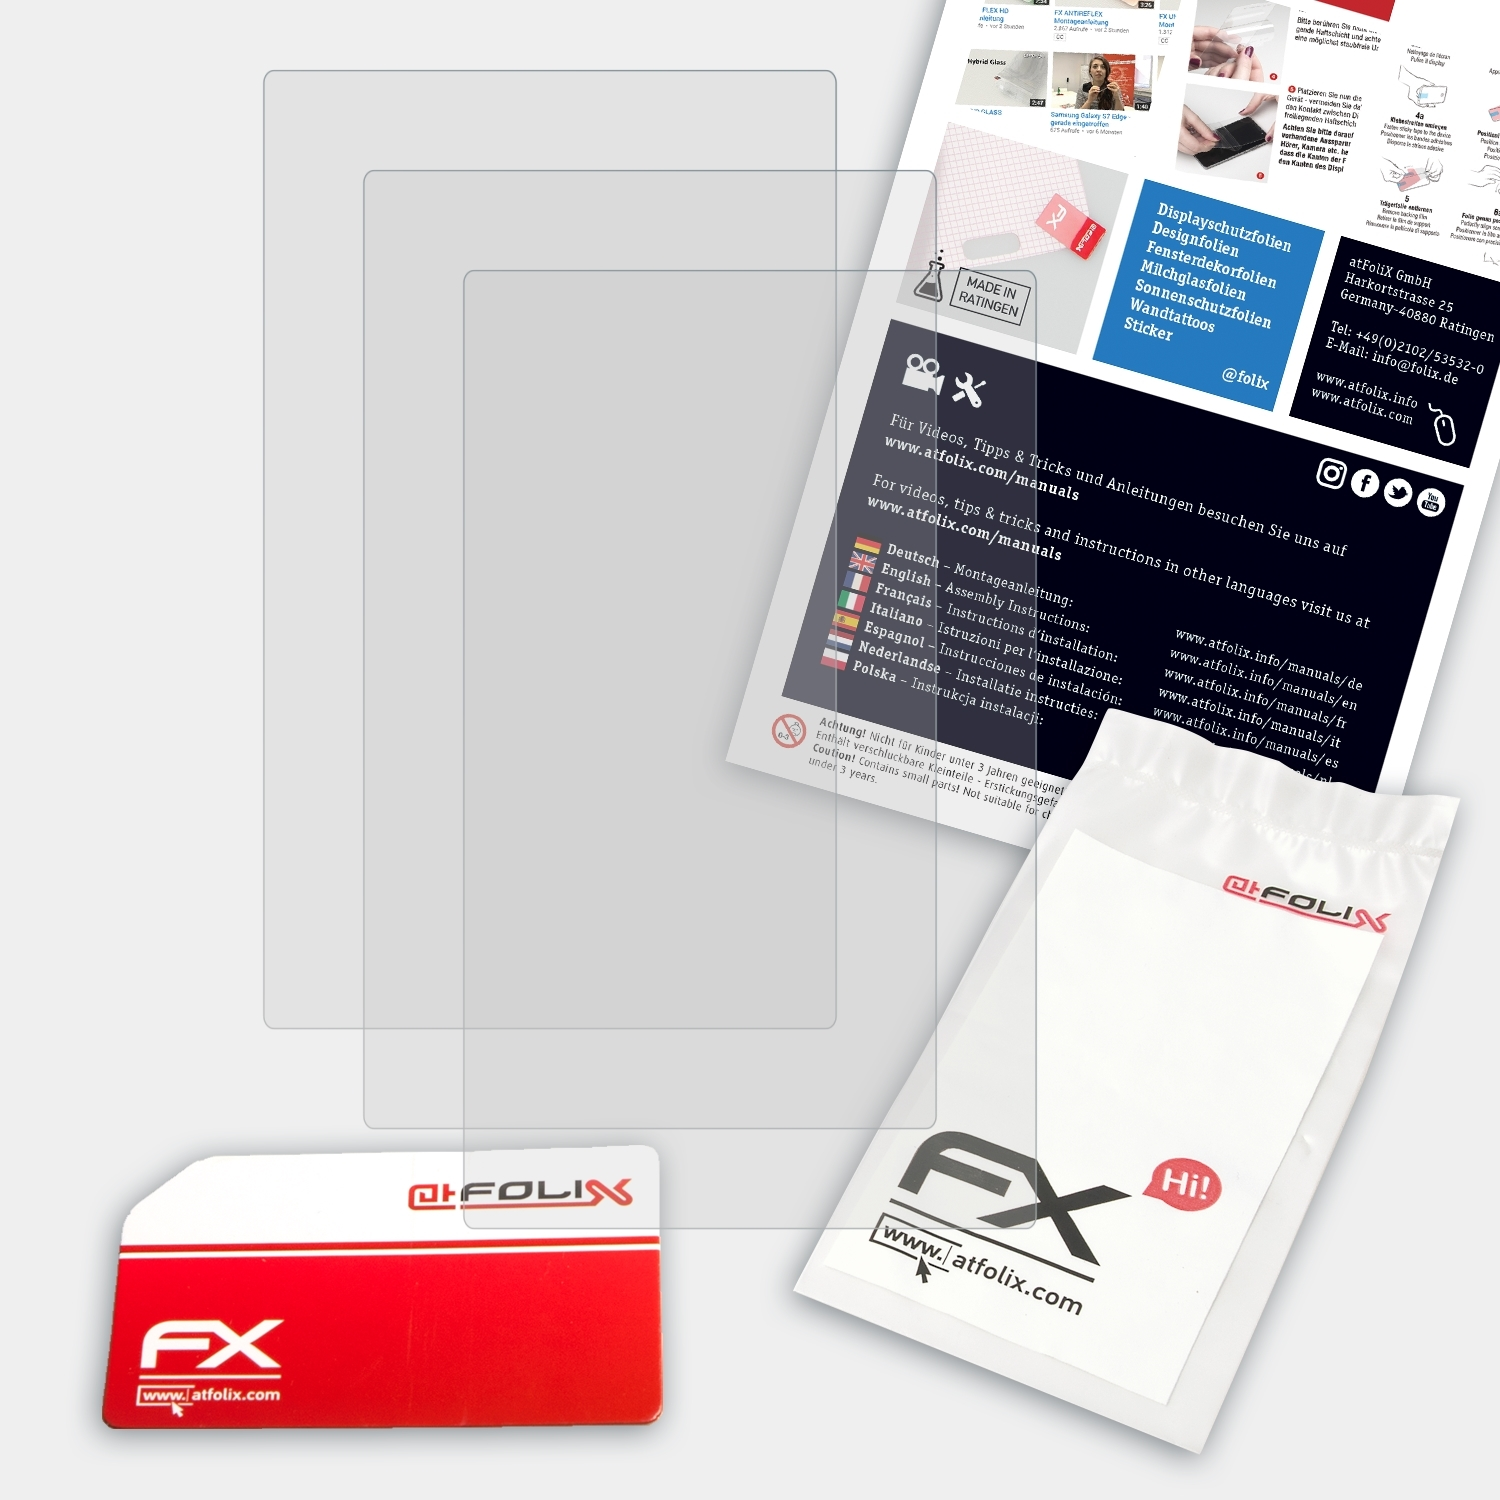 22) FX-Antireflex 3x LUX ATFOLIX Displayschutz(für Falk